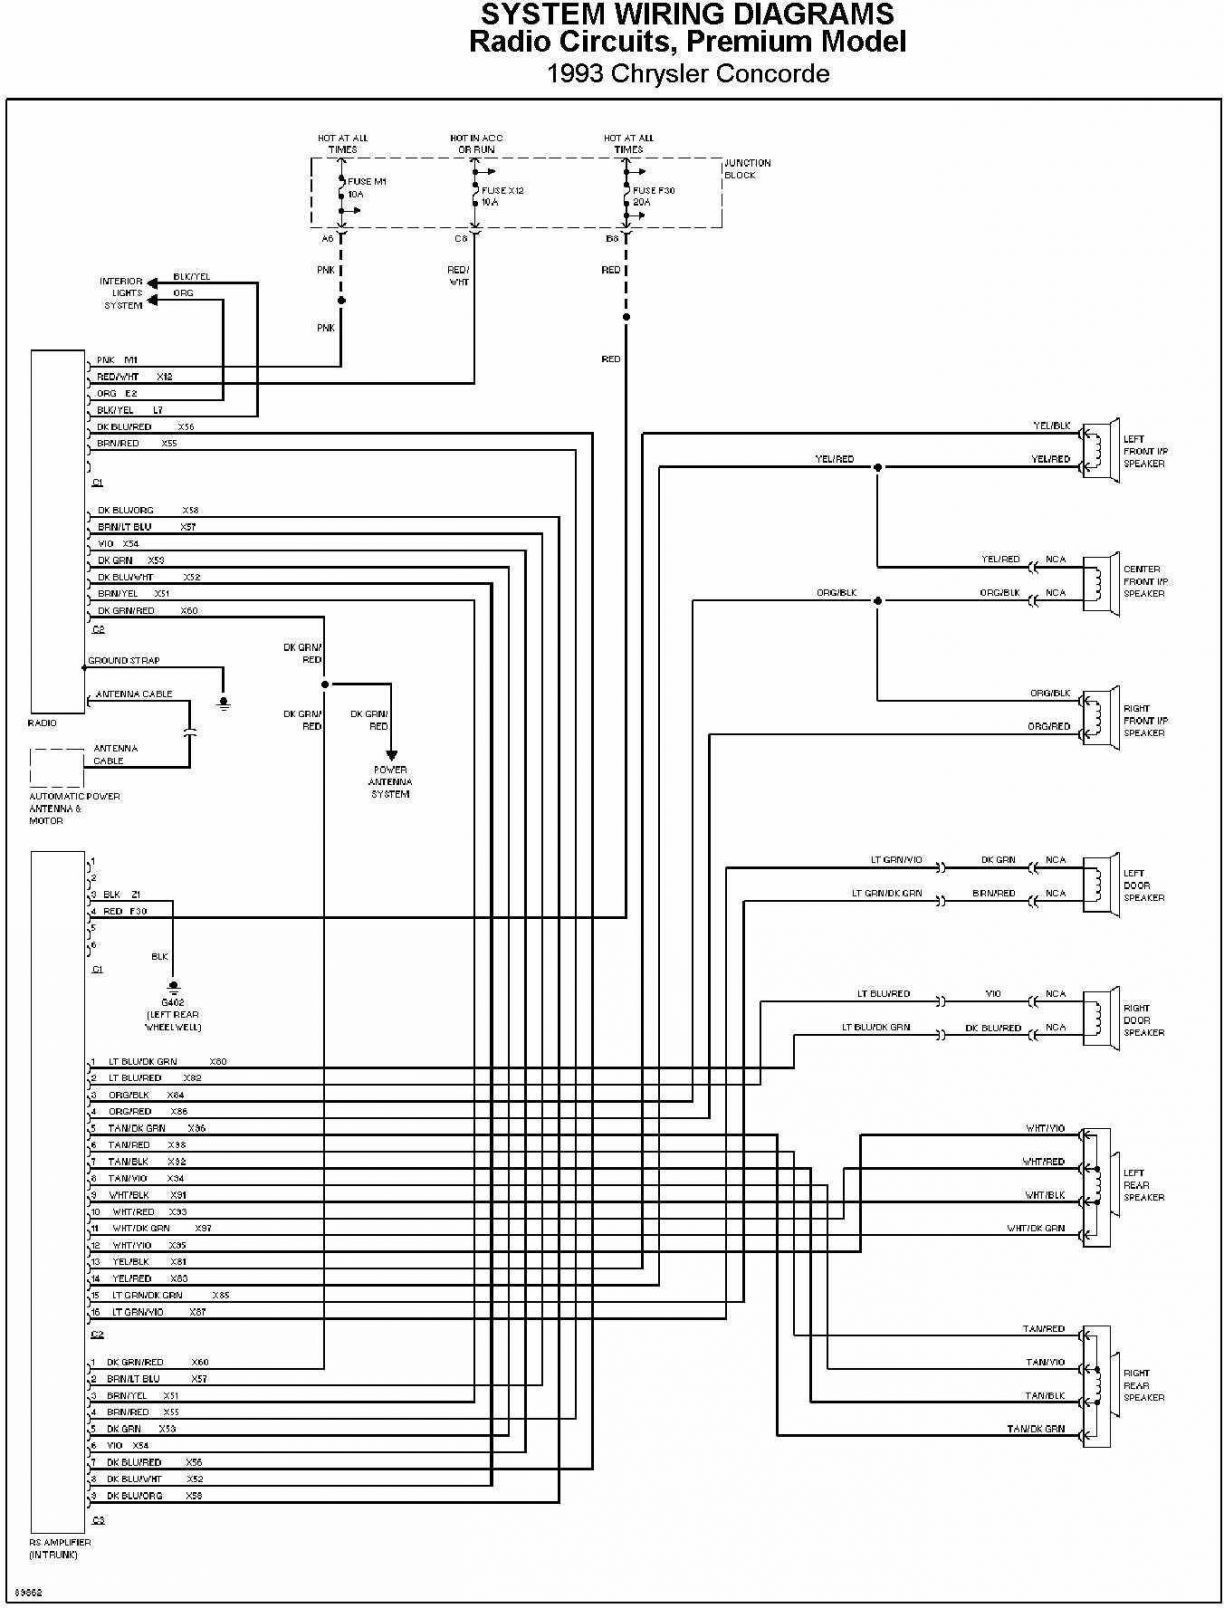 2004 chrysler pacifica speaker wiring diagram data wiring diagrams u2022 rh myarogya co 2001 Chrysler Sebring Wiring Diagram Chrysler Radio Wiring Diagram